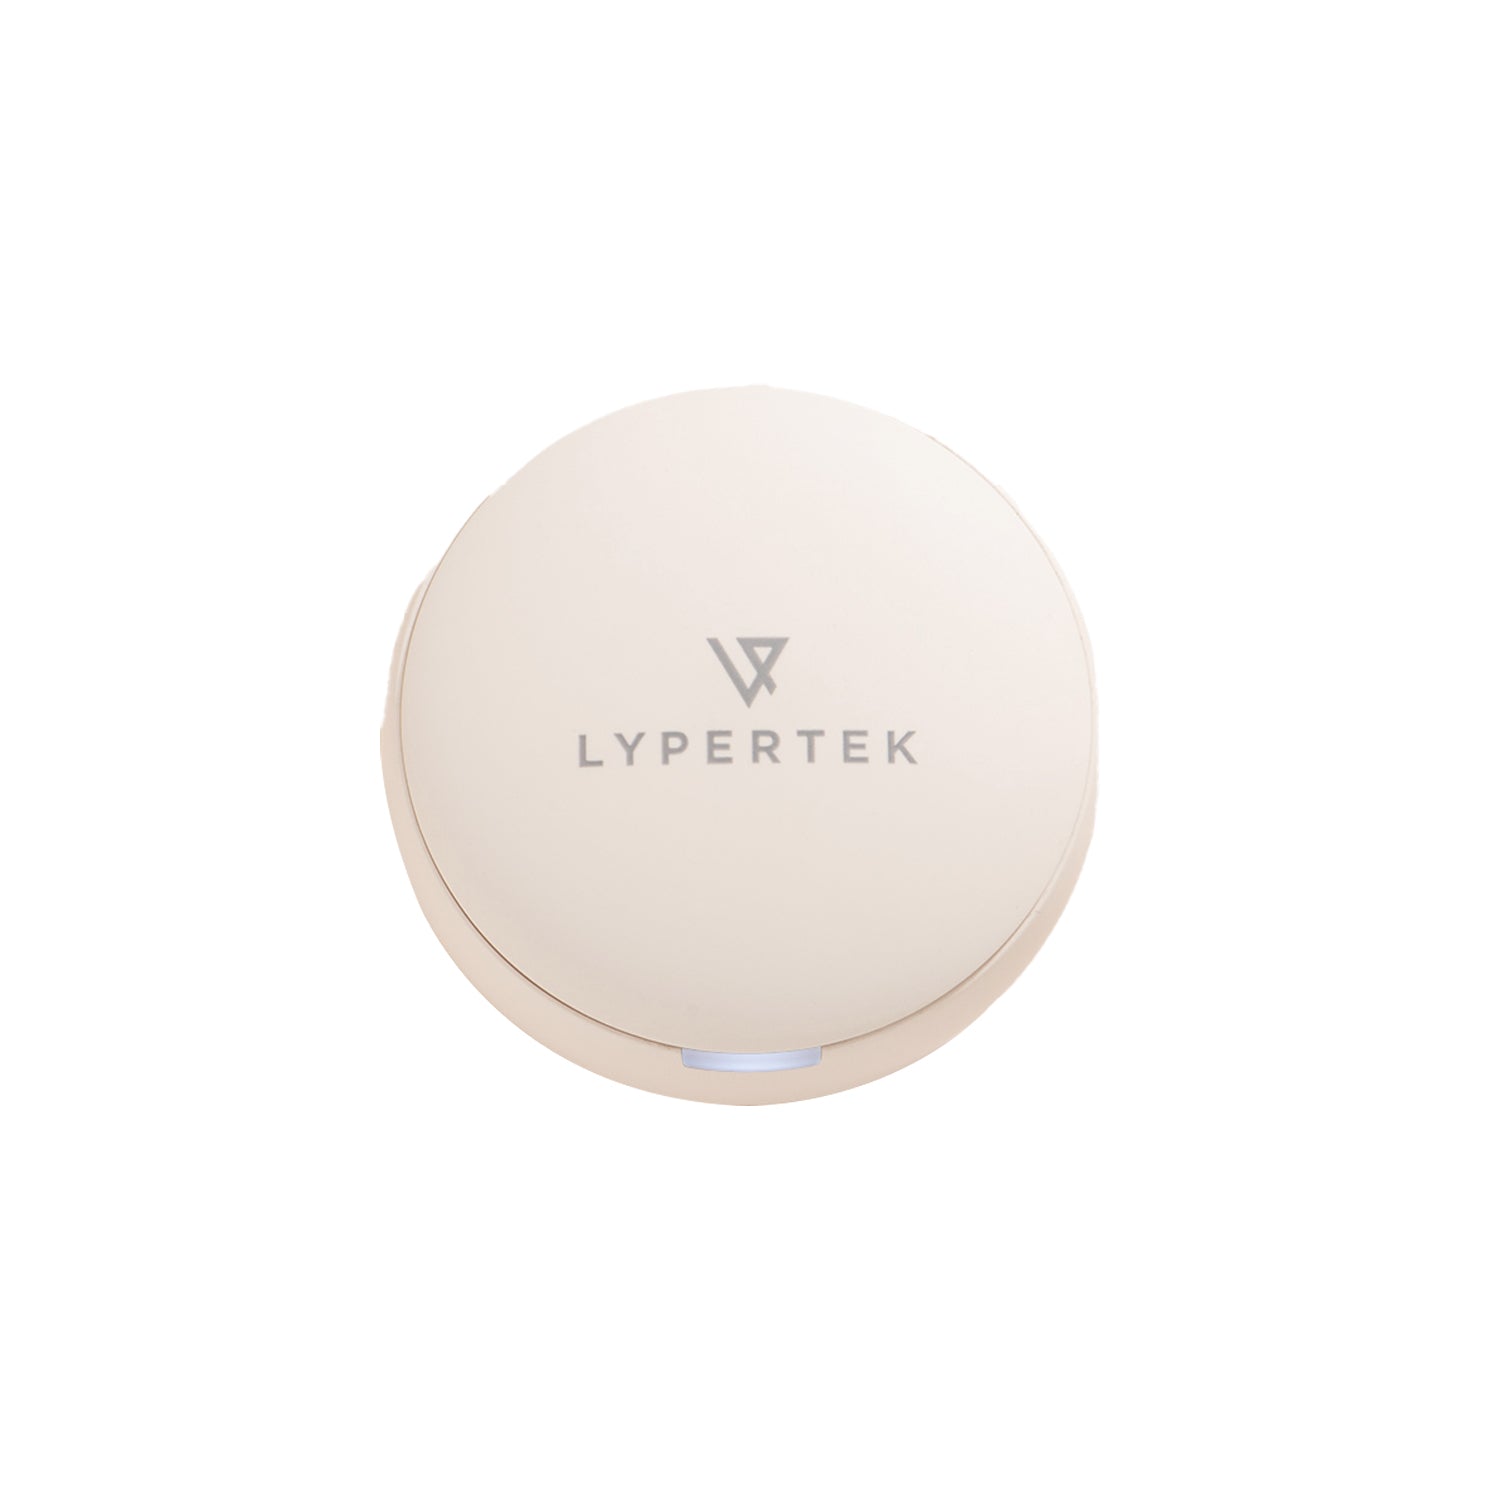 Lypertek Soundfree S10